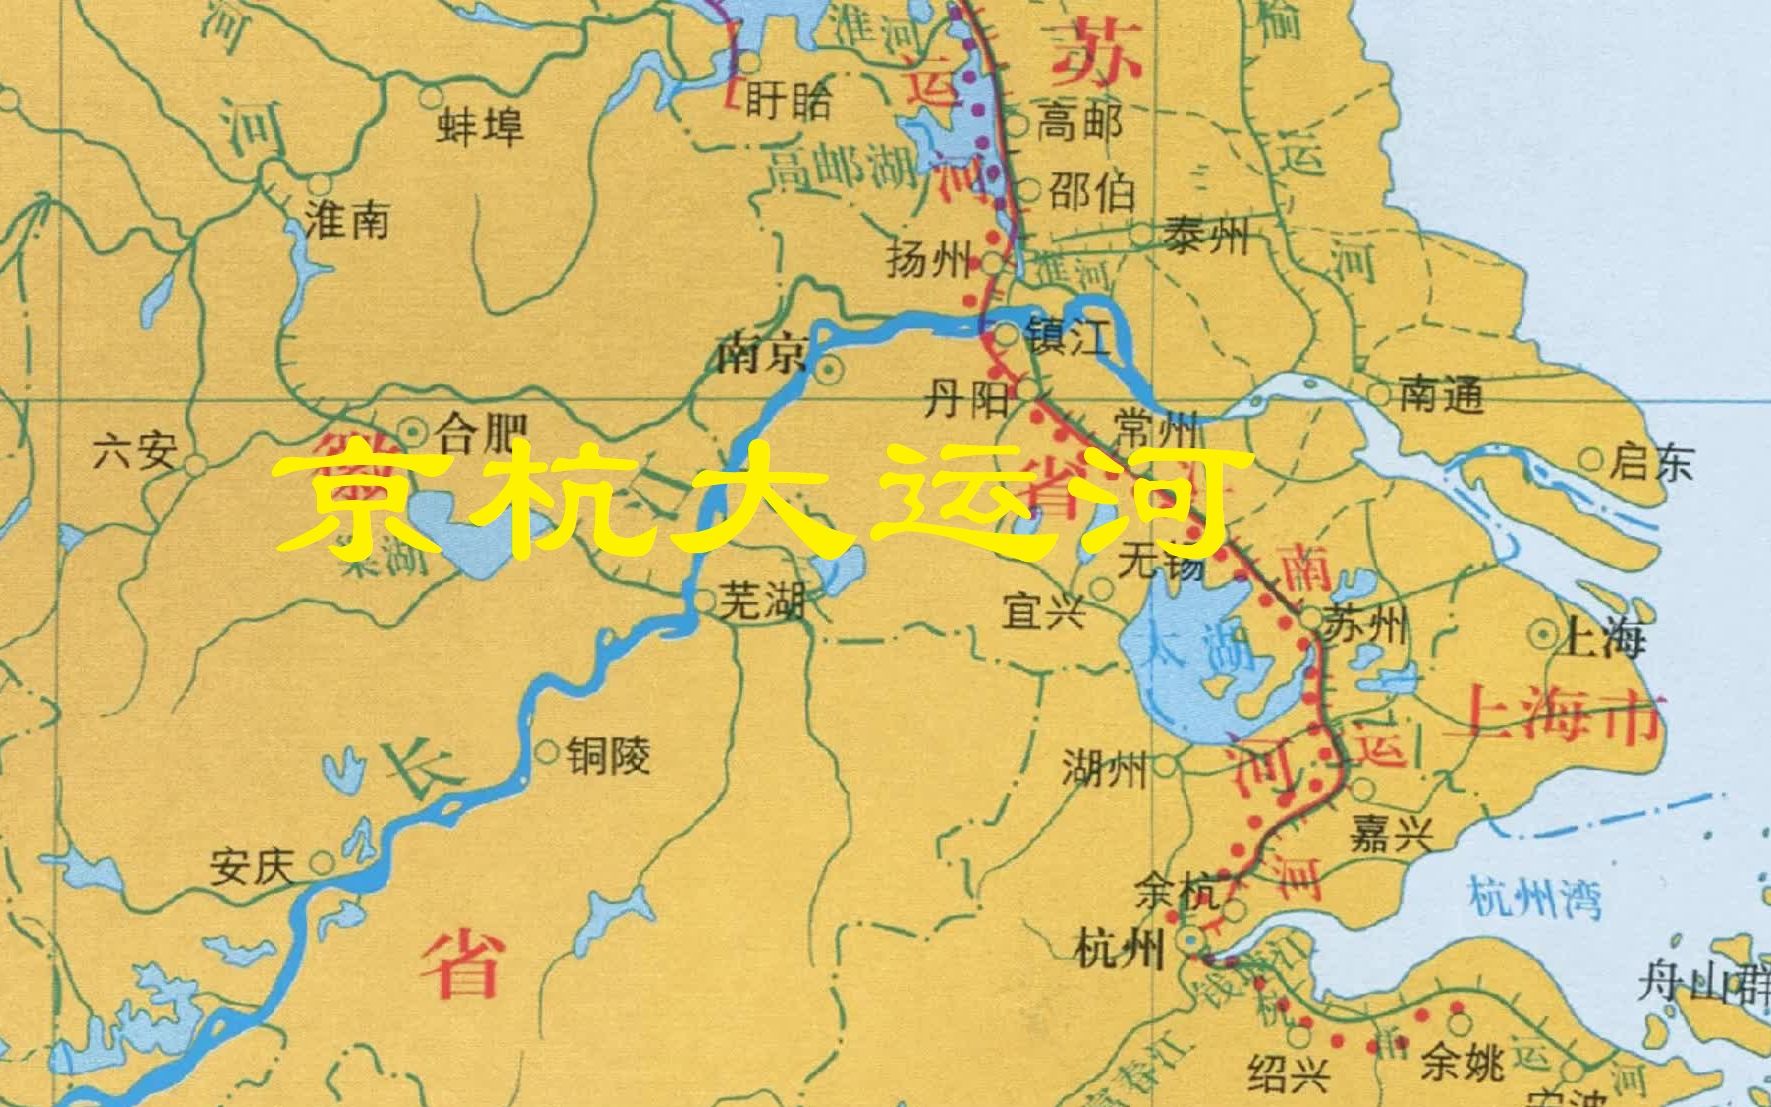 知道吗隋朝京杭大运河竟然过洛阳对比不同朝代京杭运河变迁